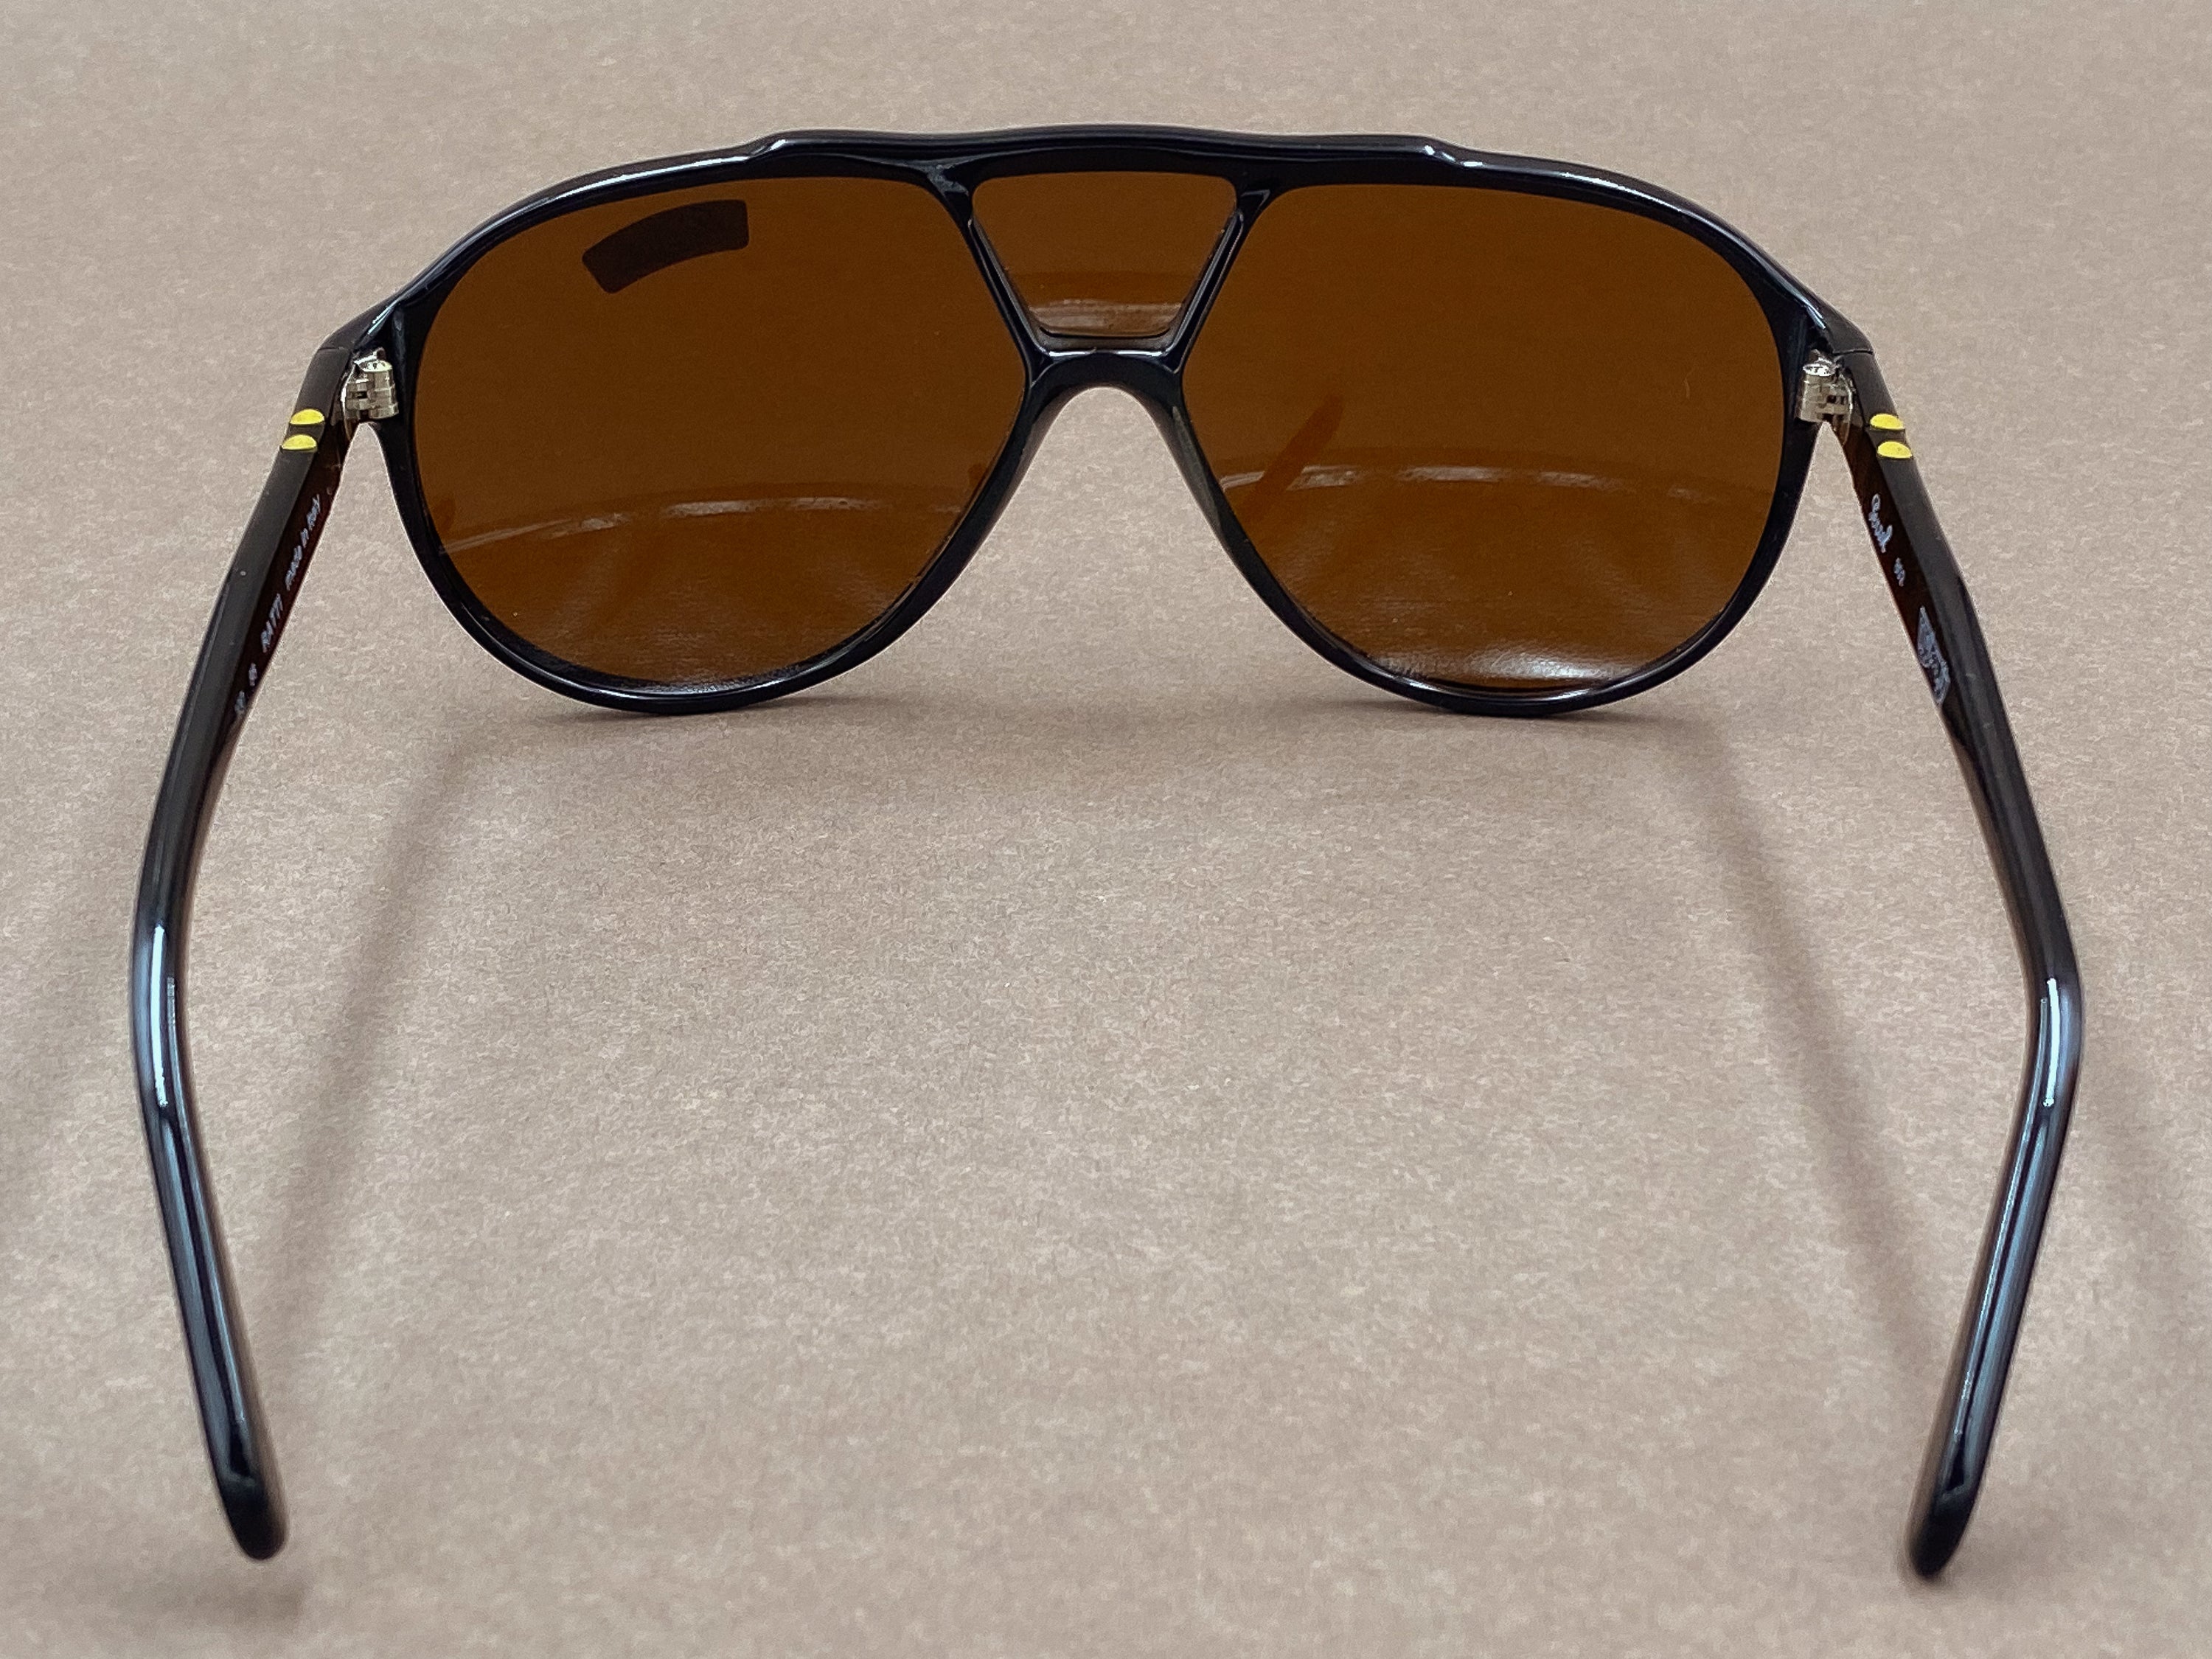 Persol Ratti 802 sunglasses